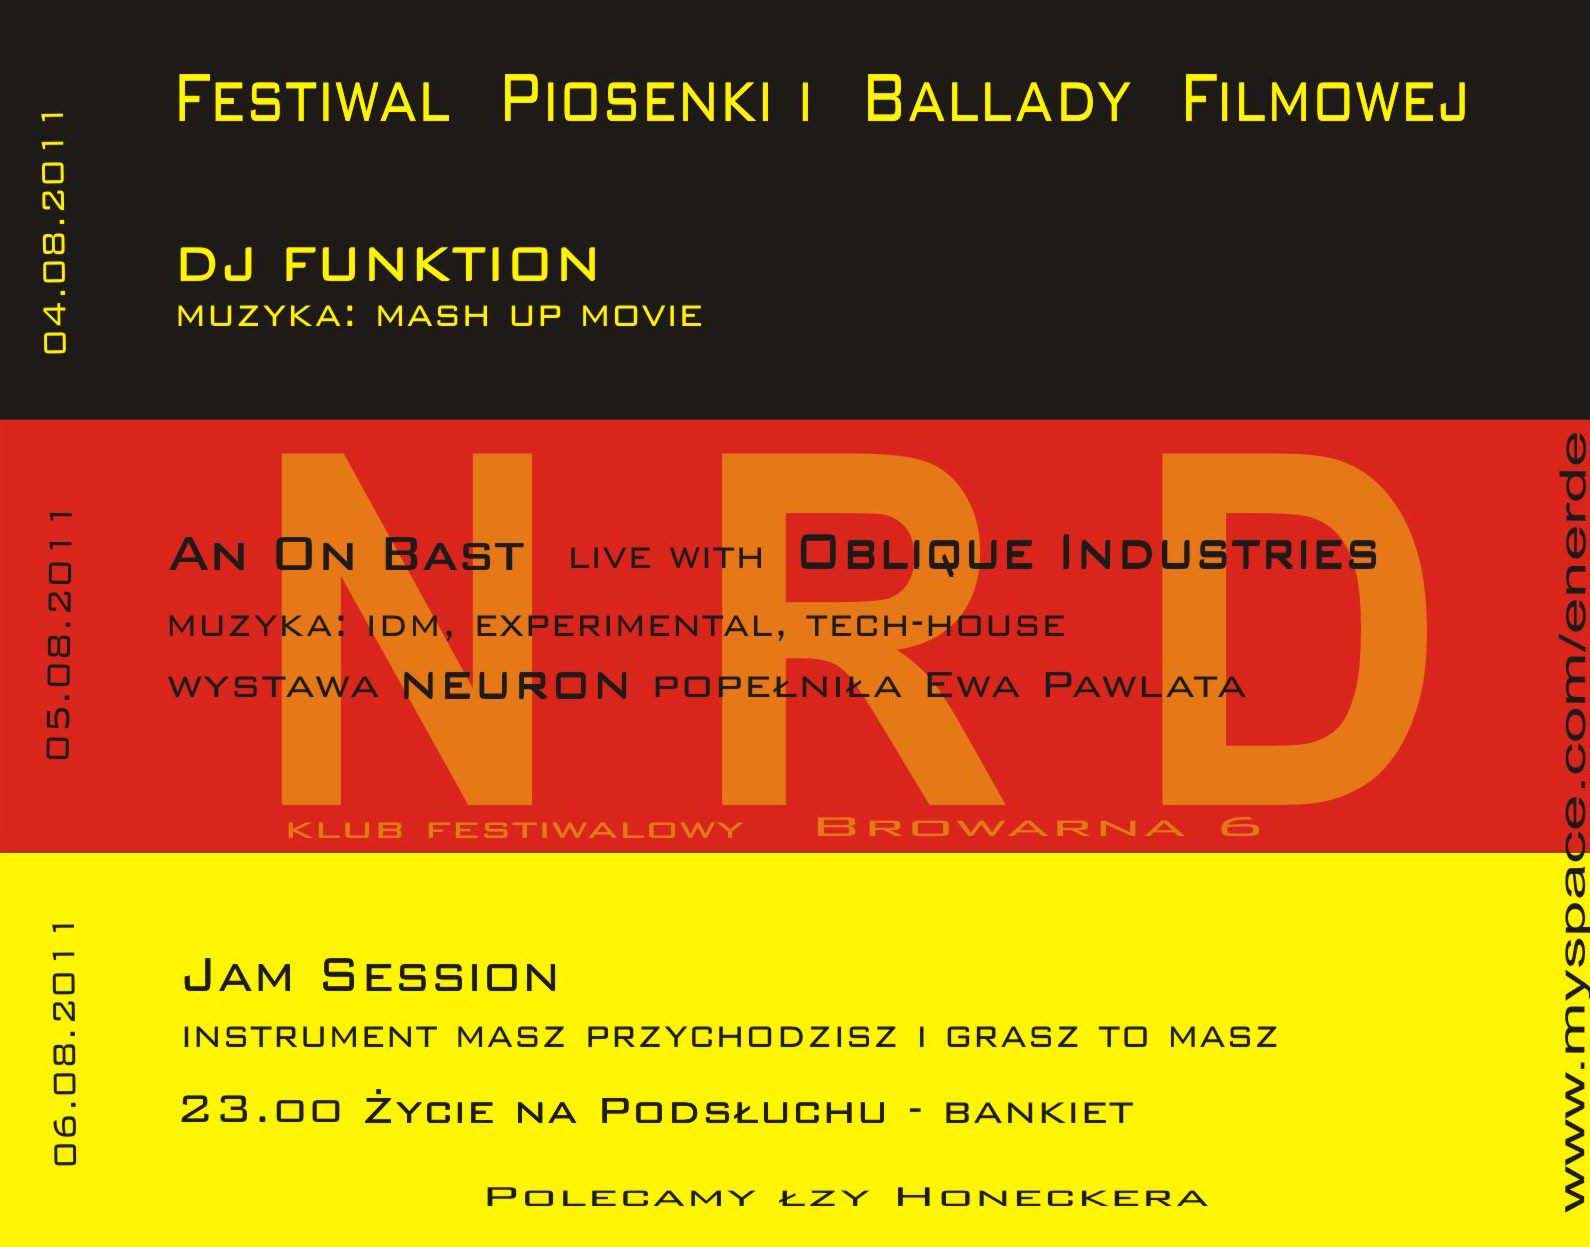 Festiwal Piosenki i Ballady Filmowej - plakat (udostępniony przez organizatora)